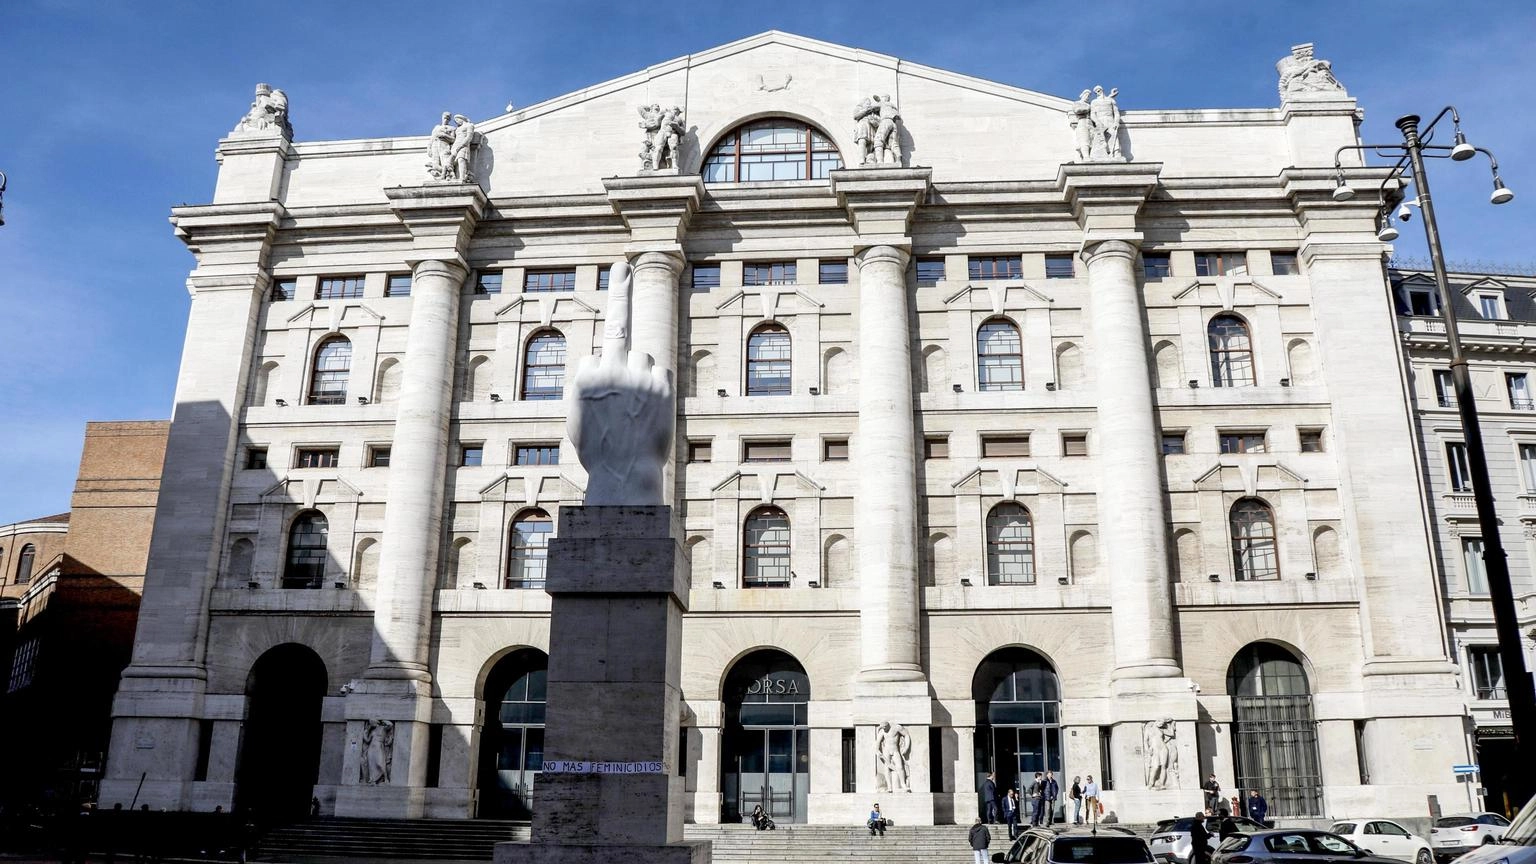 Borsa: Milano apre in lieve rialzo, Ftse Mib +0,24%